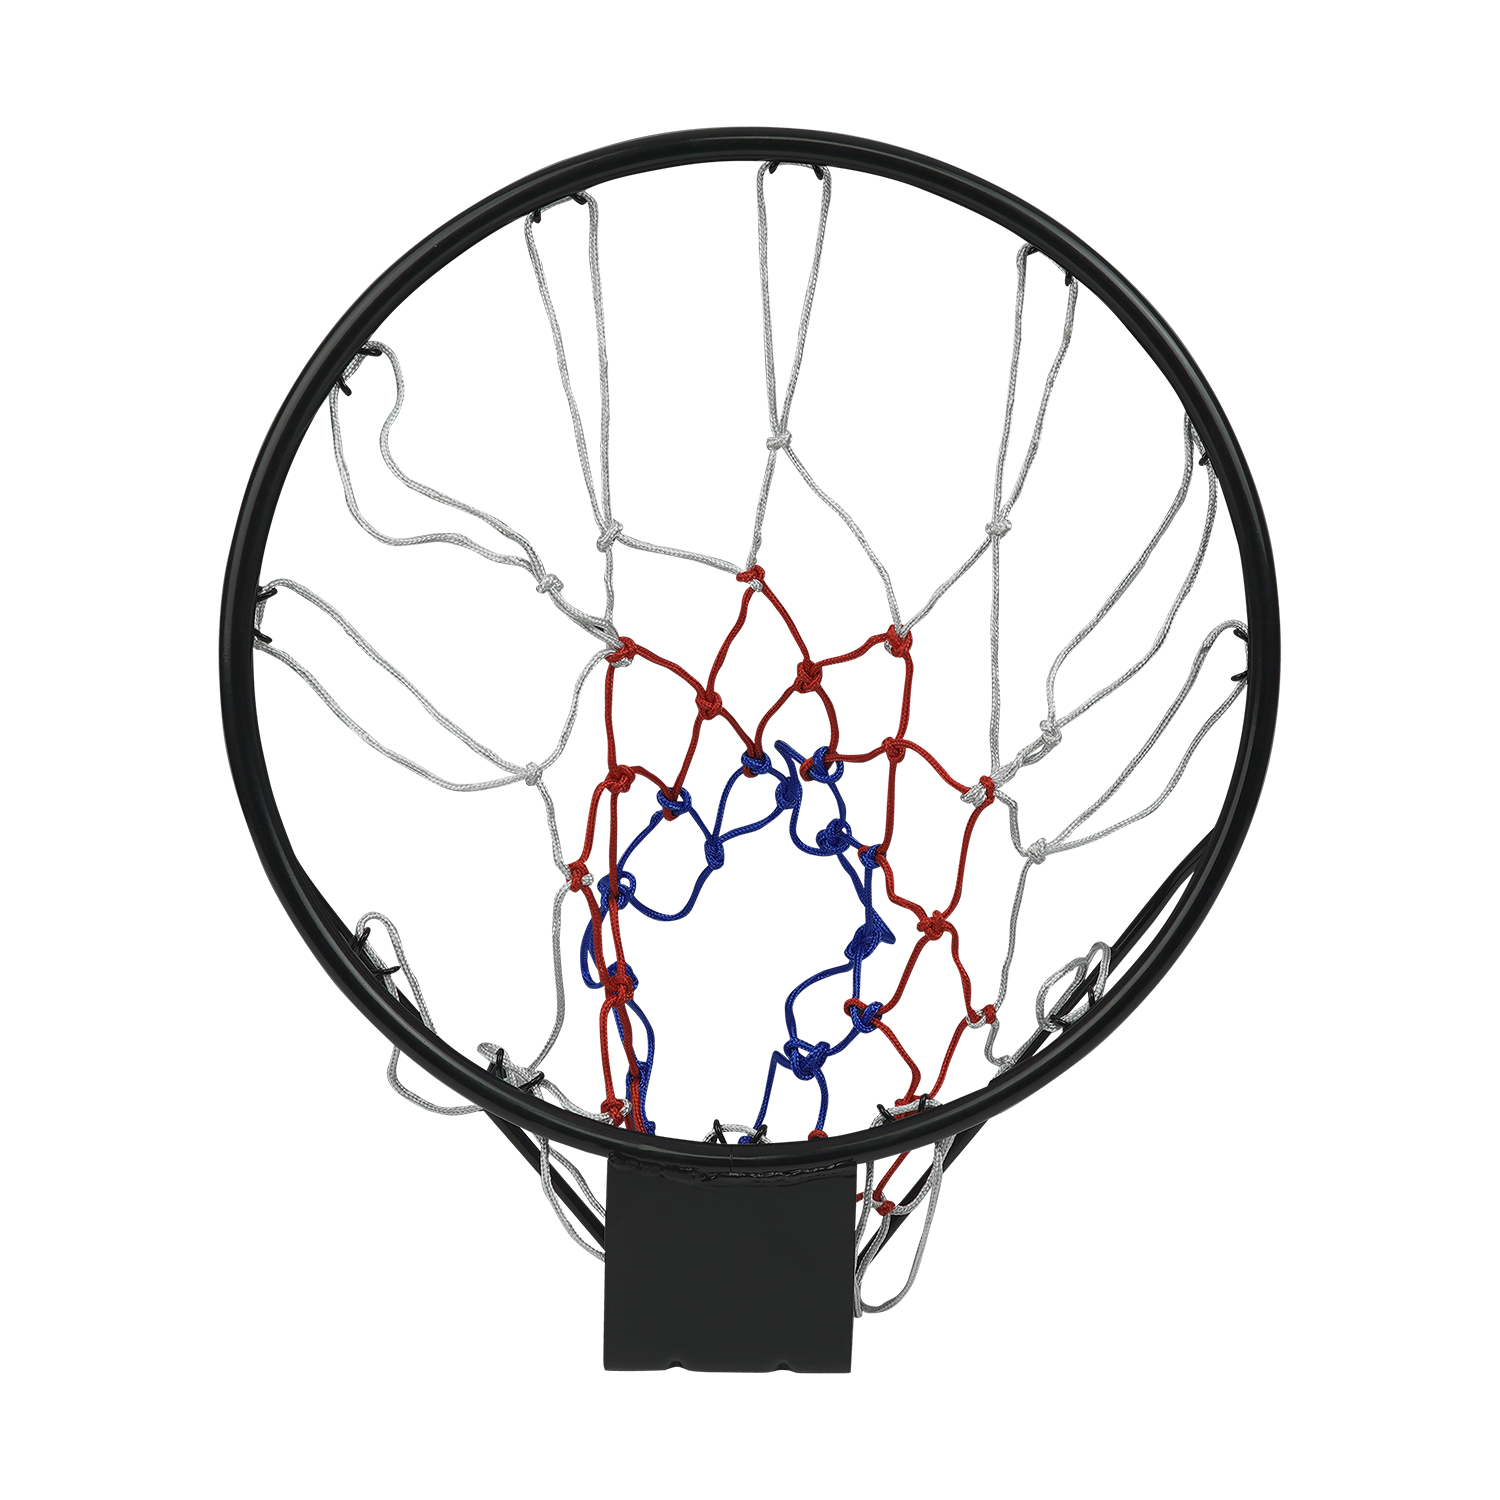 Helix Wall Mounted Basketball Hoop